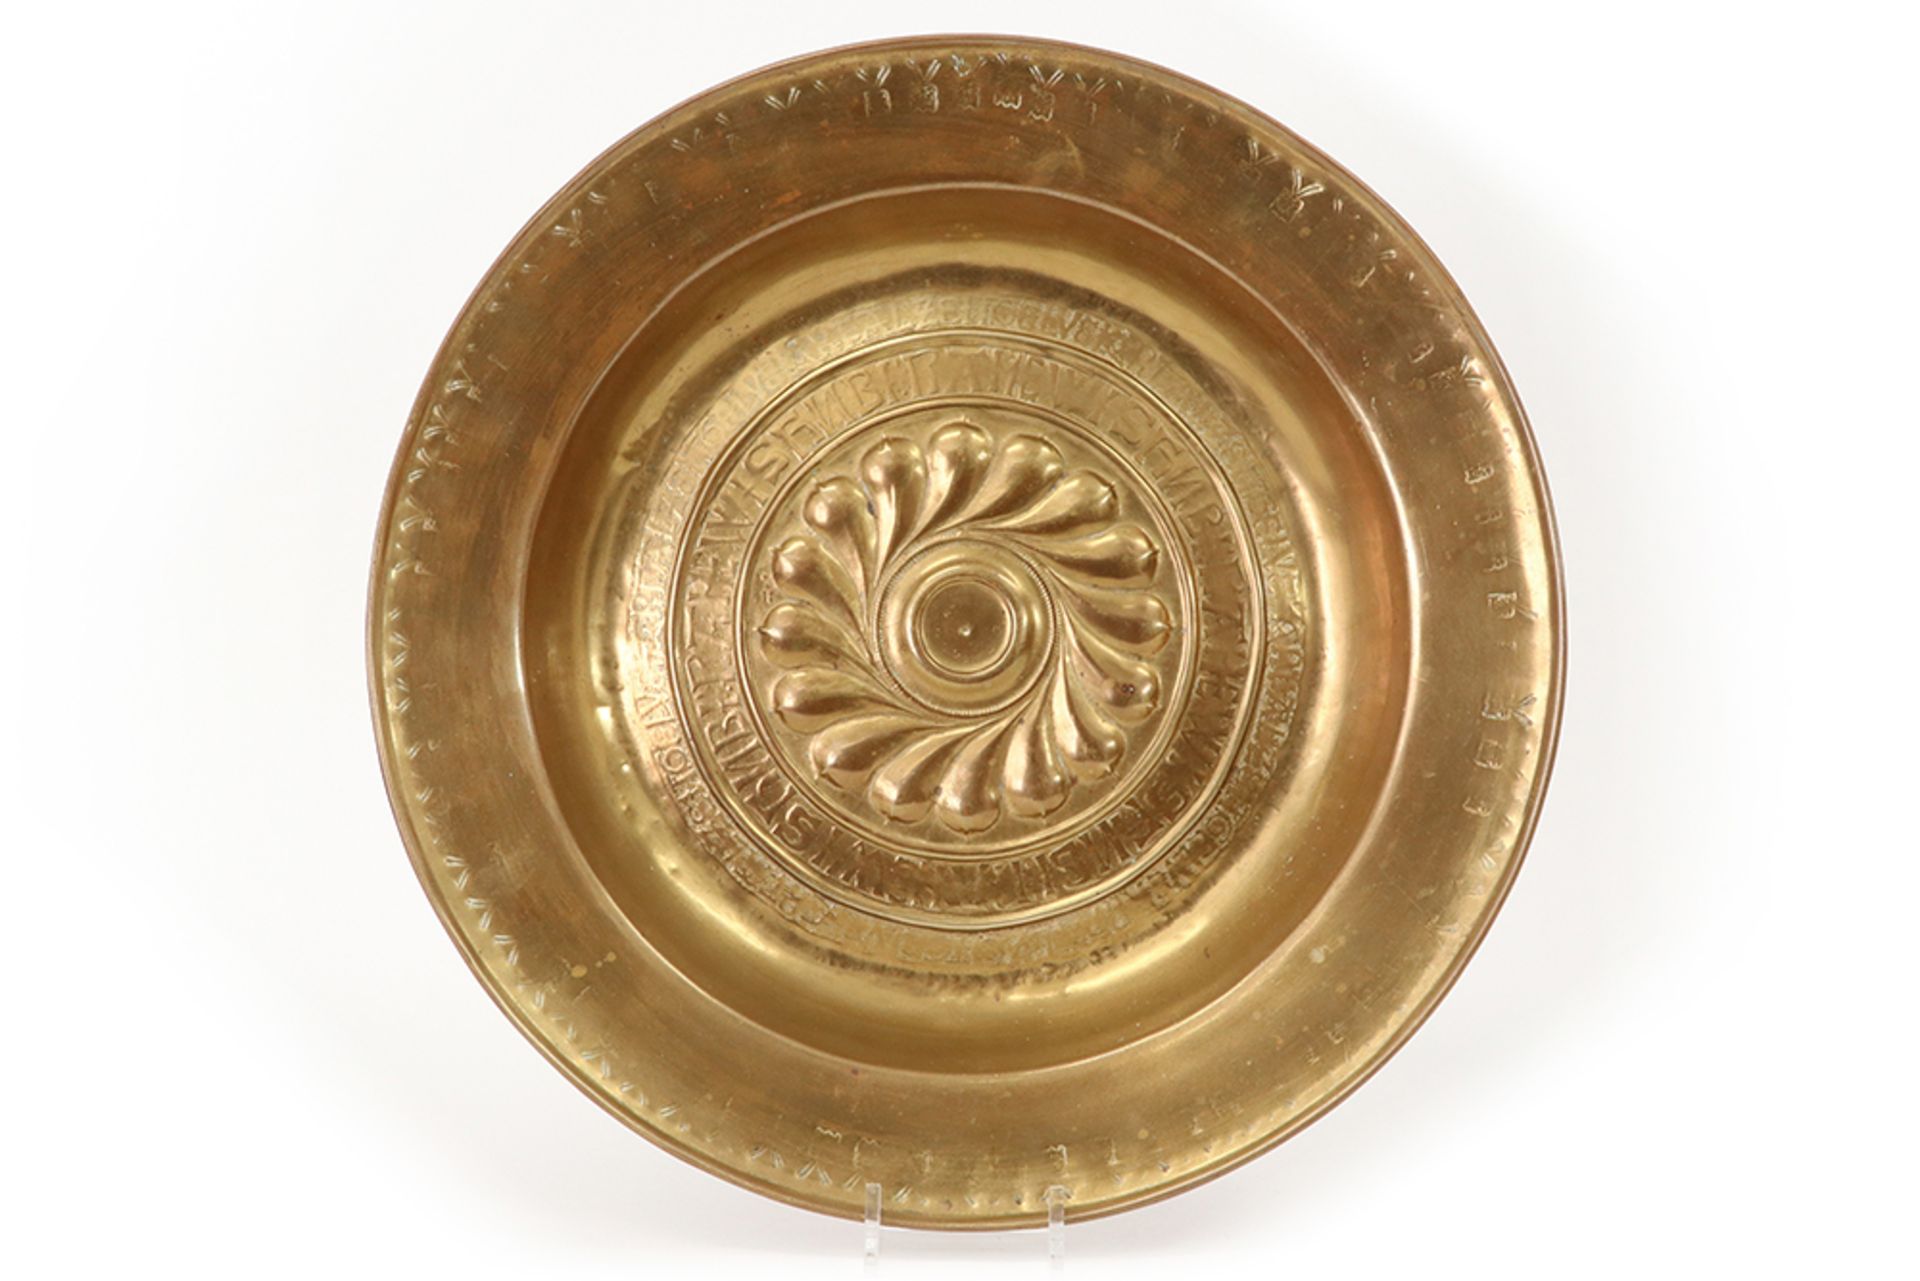 16th/17th Cent. Nurenberg offering/baptism dish in brass || Zes/zeventiende eeuwse zgn Nurenberg-